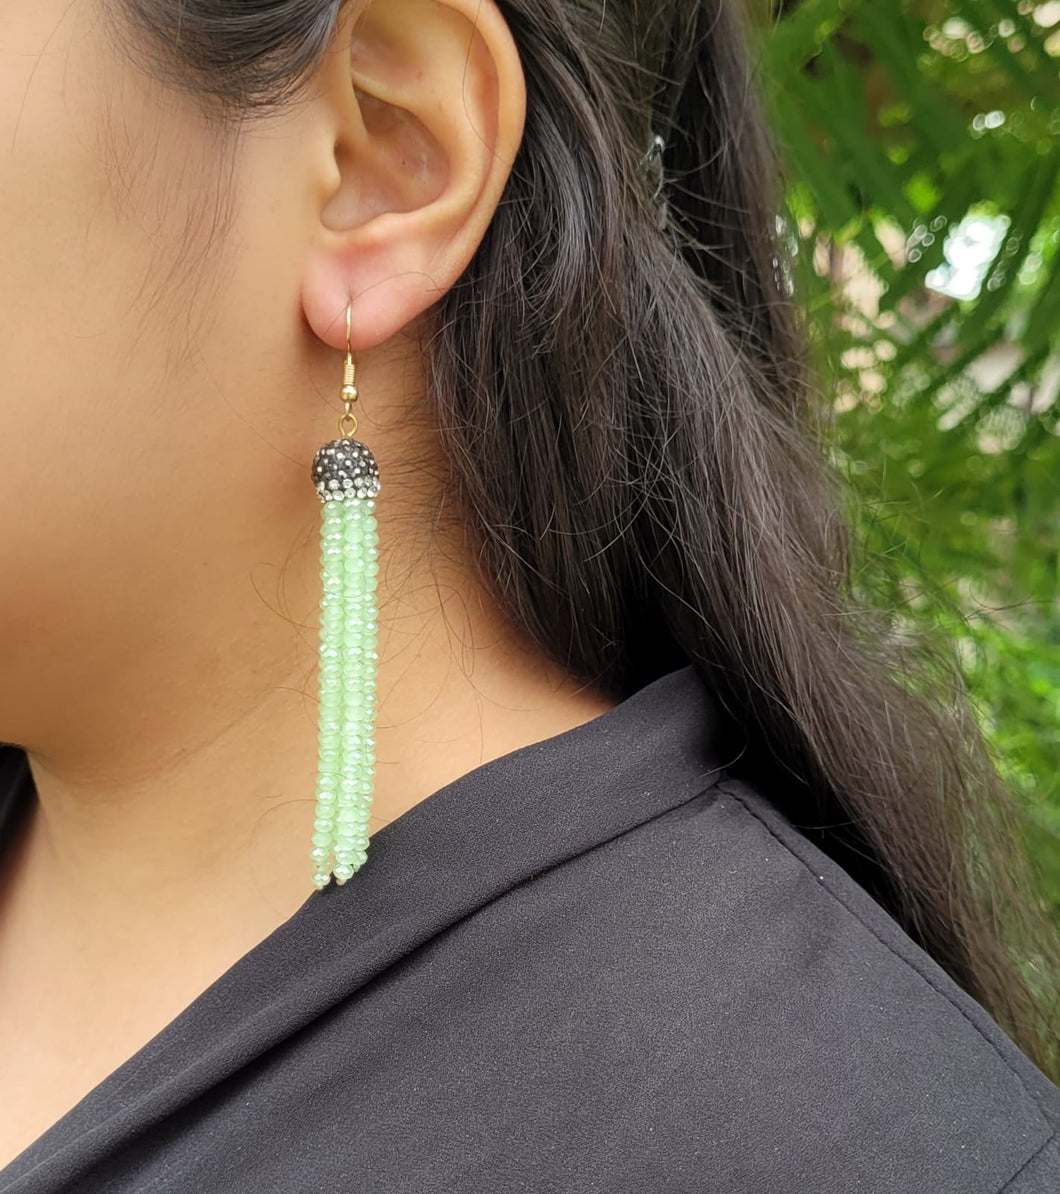 Gemzlane green fashion danglers earrings for women and girls